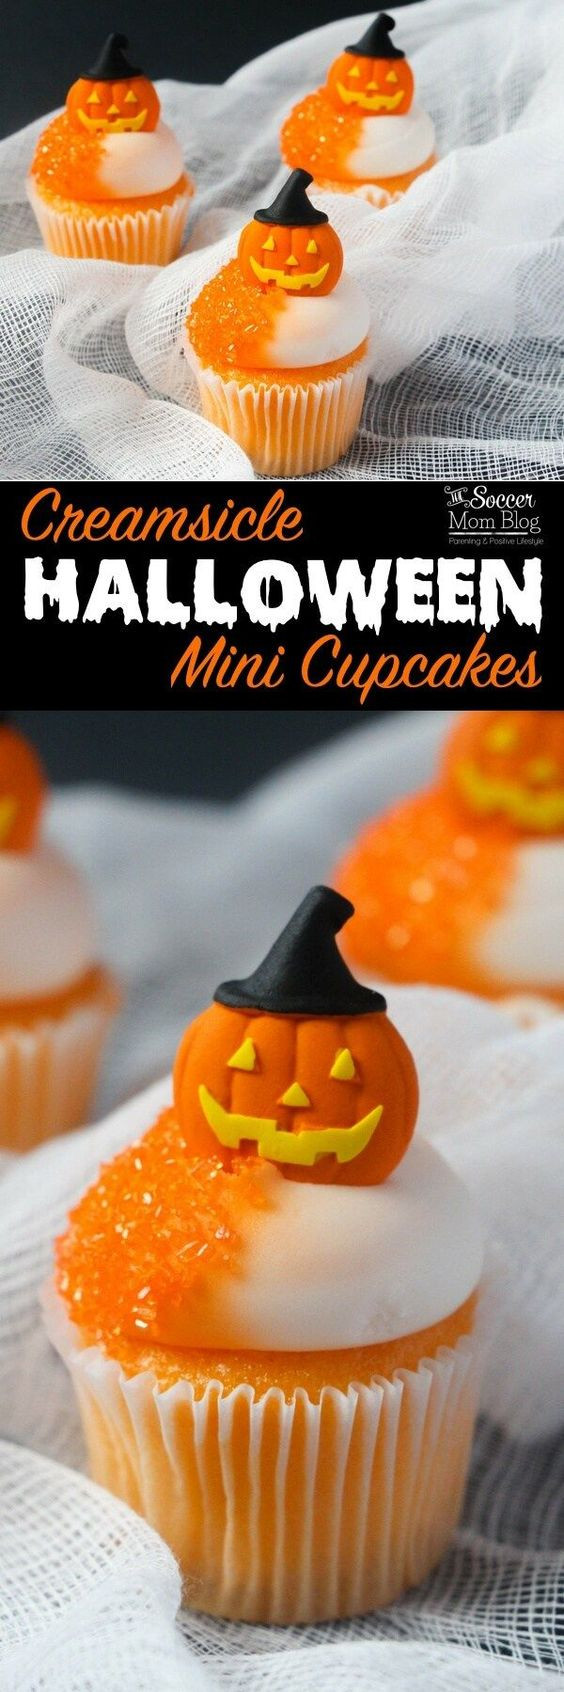 Halloween Cupcakes Pinterest
 Halloween cupcakes Orange fruit and Halloween on Pinterest